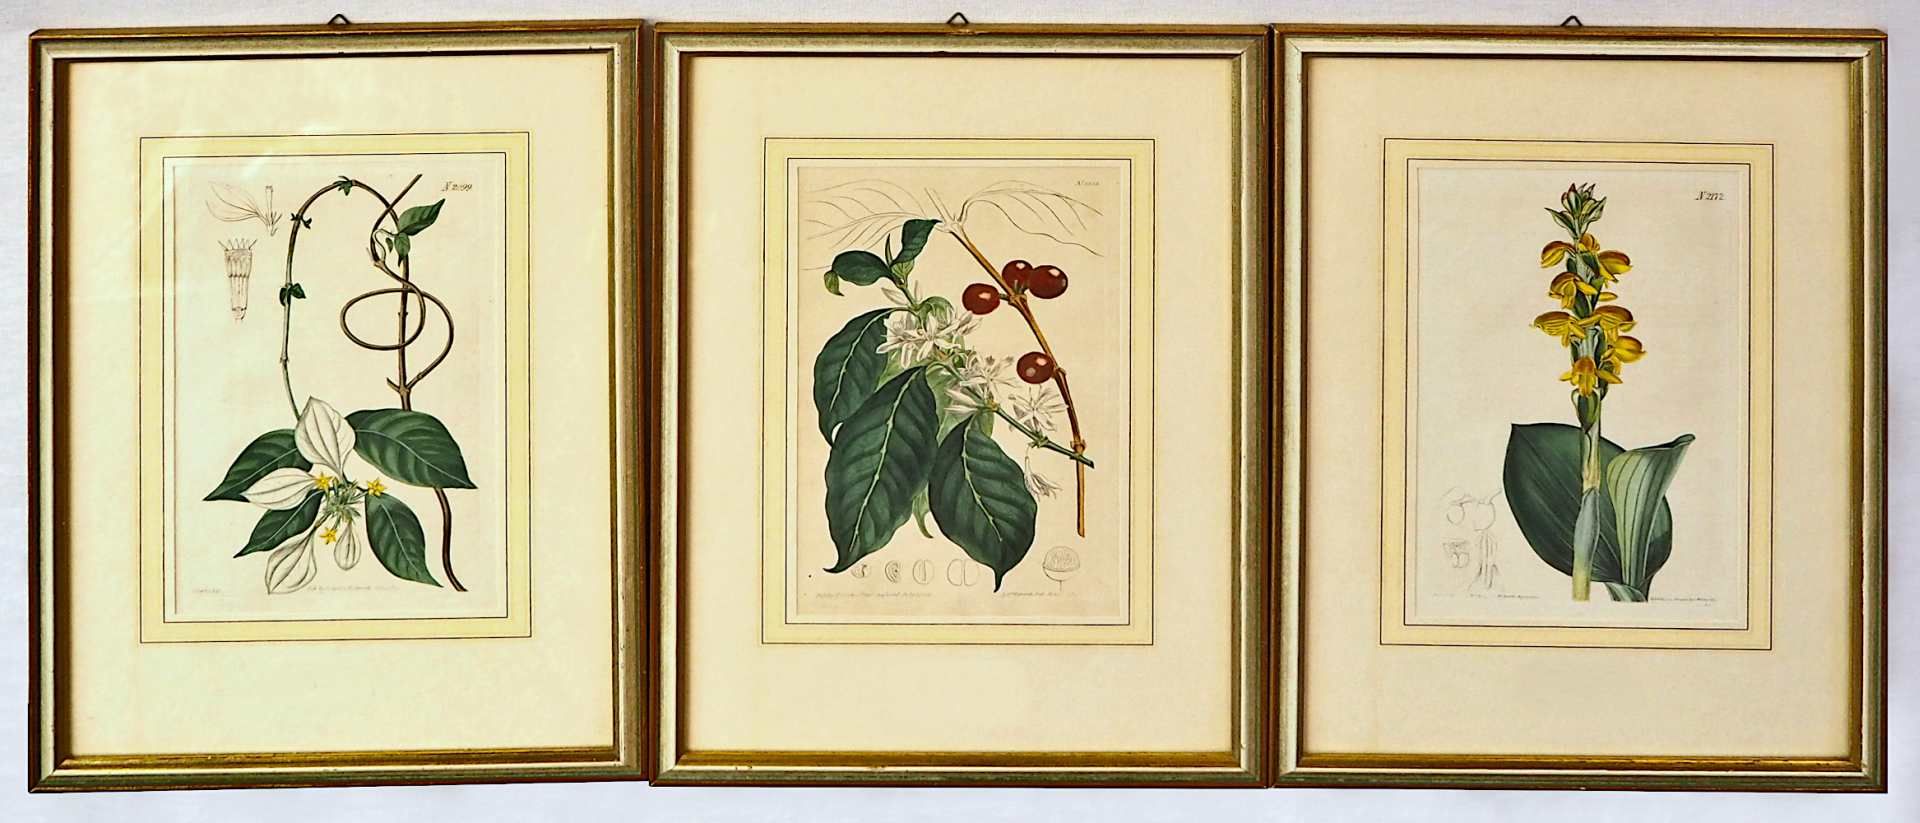 3 altkolorierte Kupferstiche aus "Curtis's Botanical Magazine", 1787 gegründet von William CUR